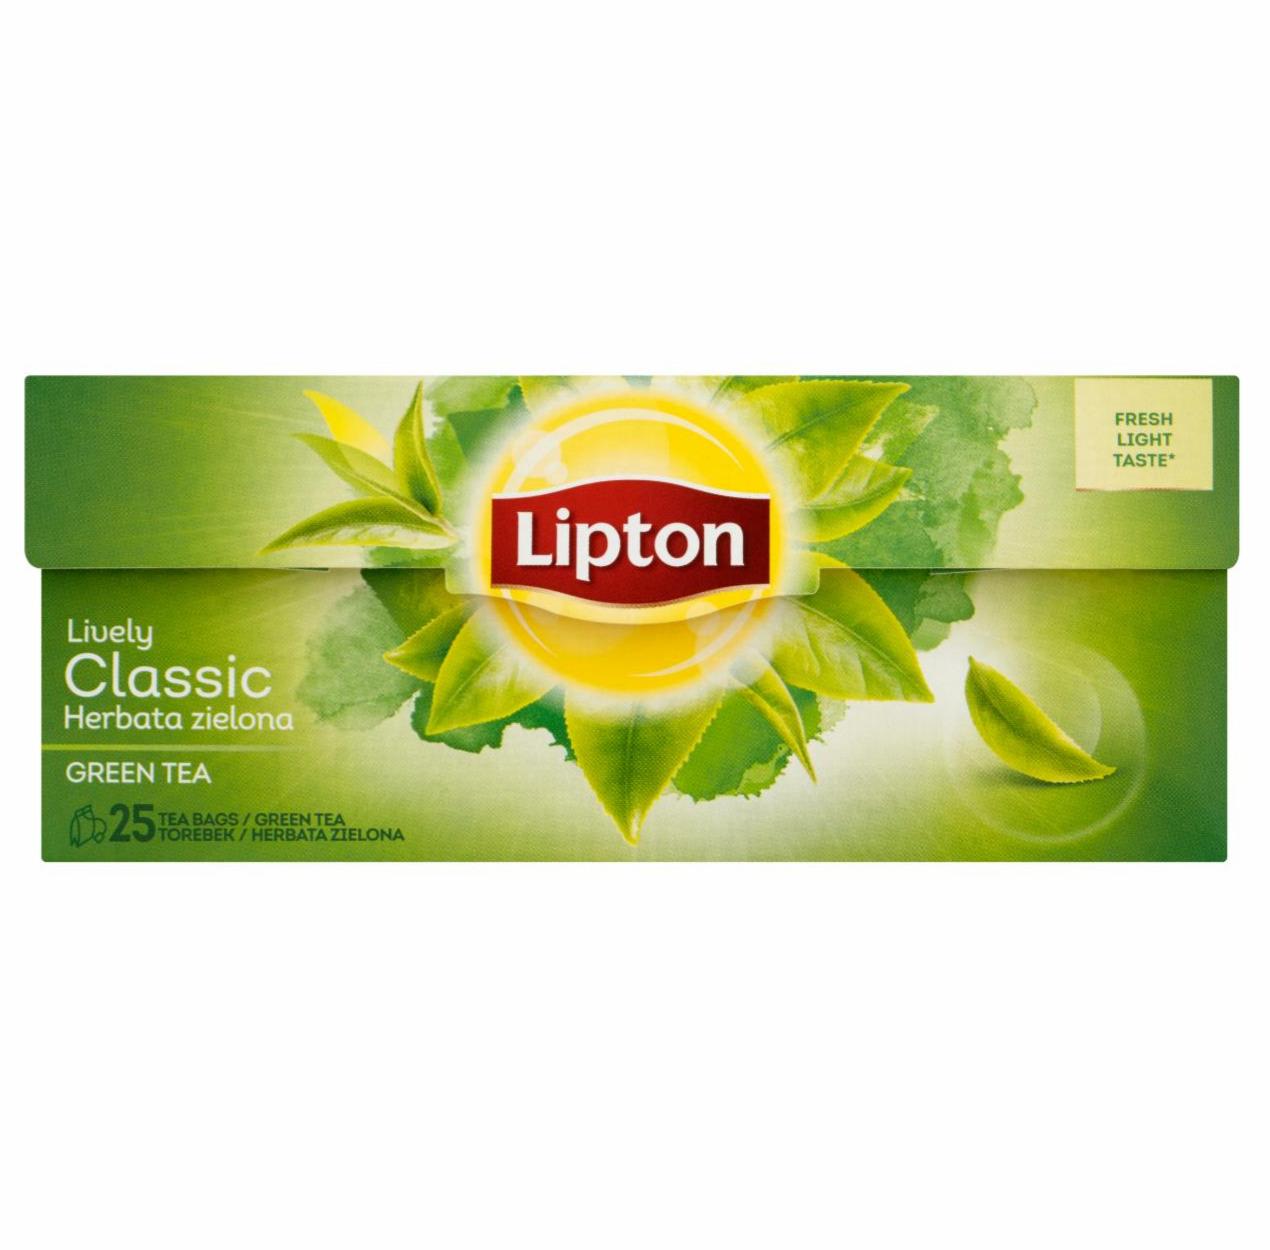 Zdjęcia - Lipton Classic Herbata zielona 32,5 g (25 torebek)